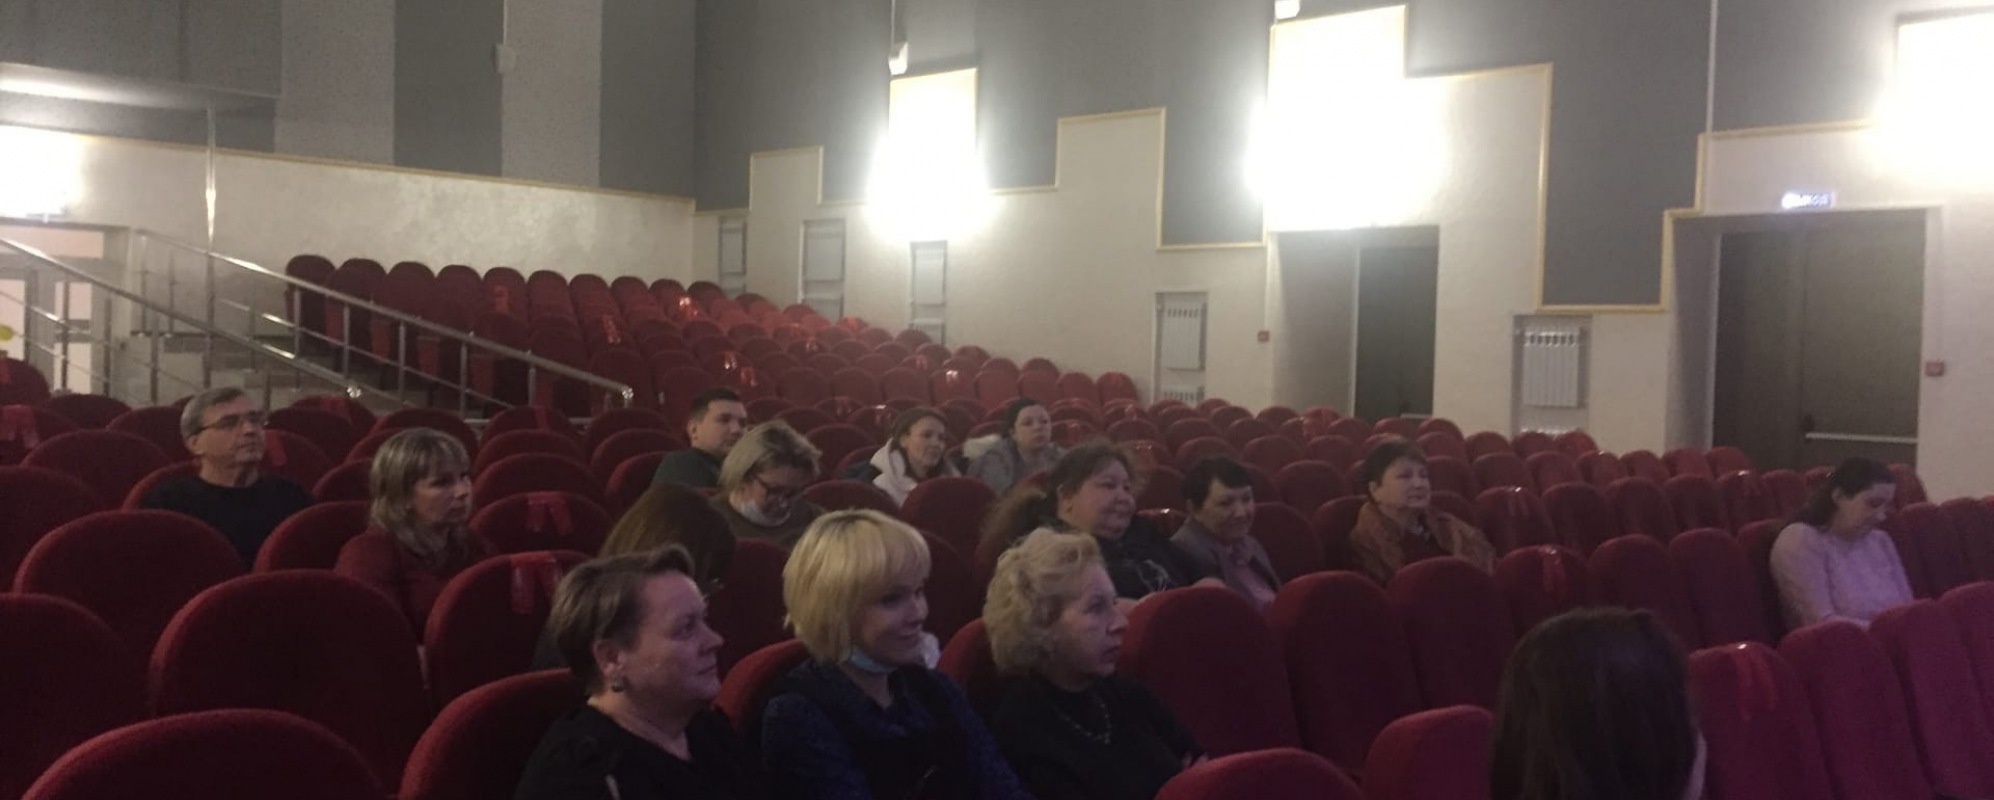 Фотографии концертного зала Зрительный зал Киржачского районного дома культуры